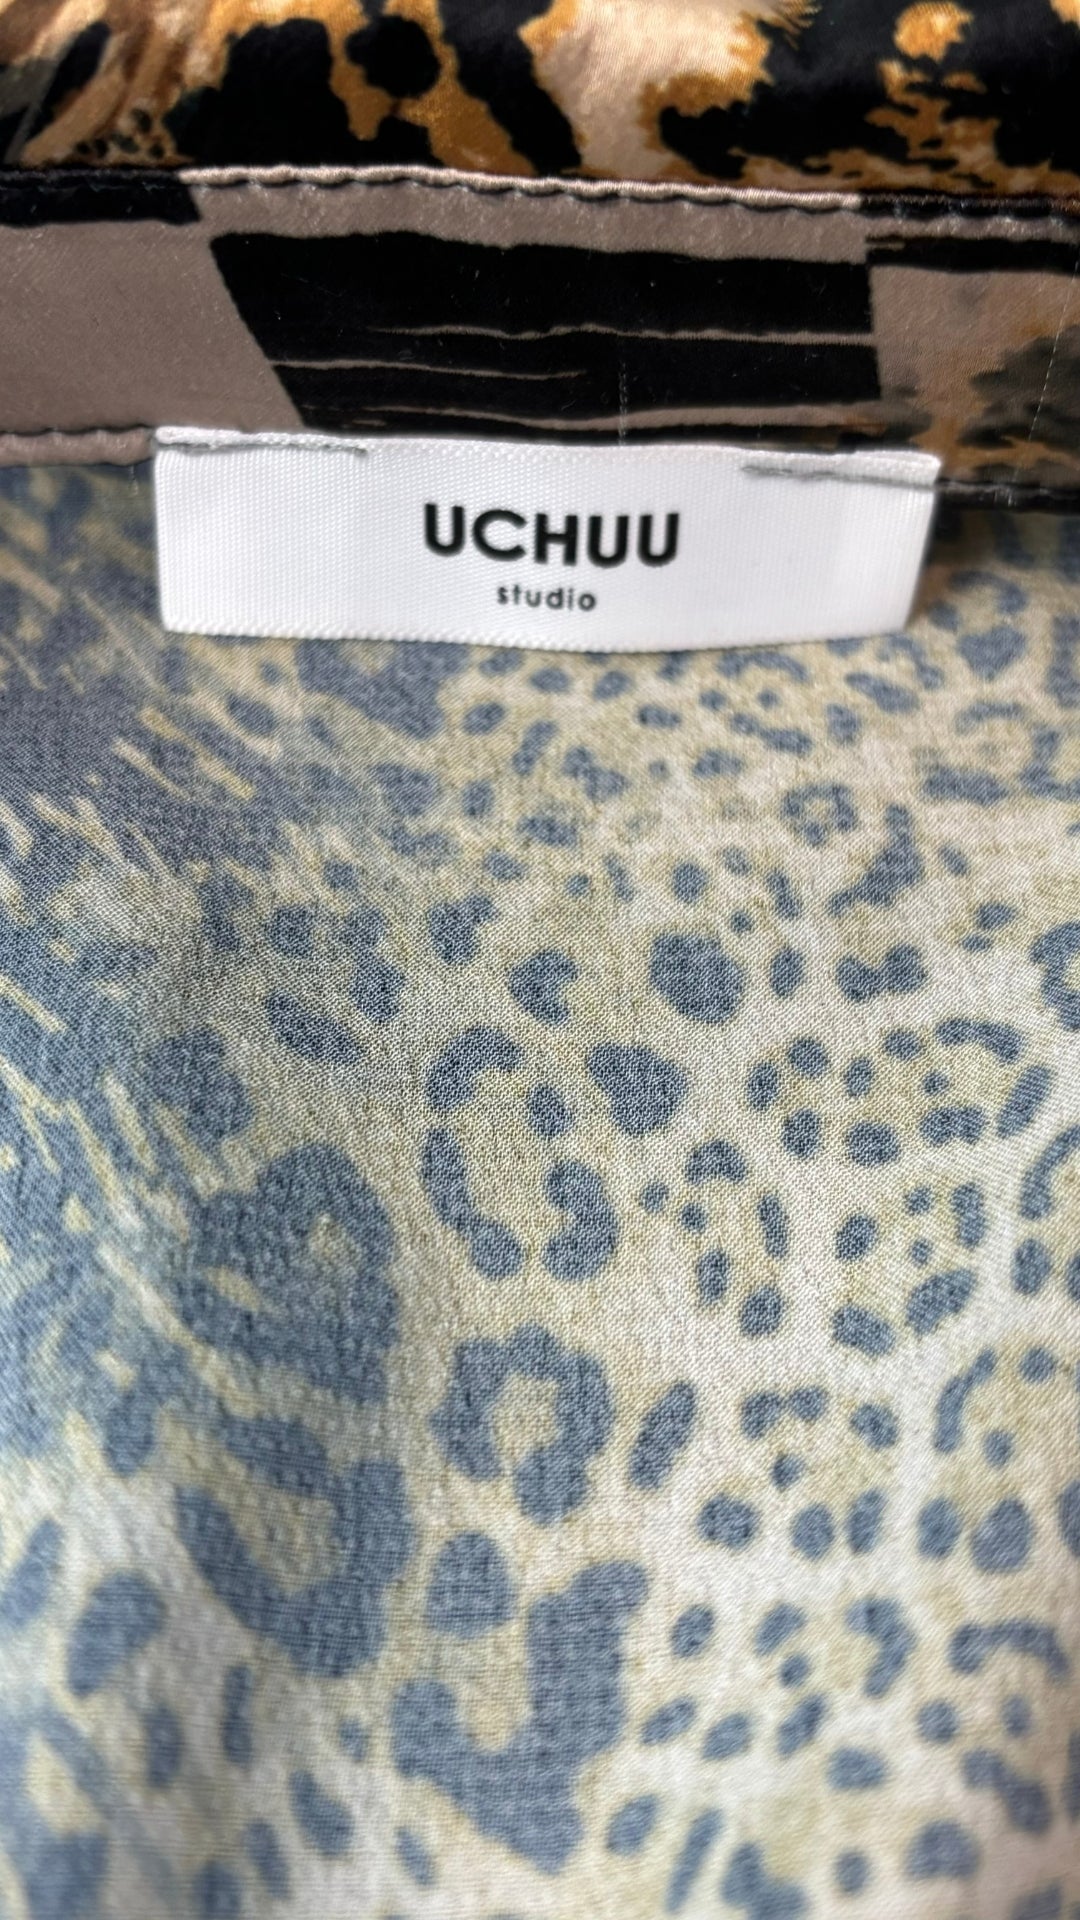 Chemisier tunique léopard Uchuu Studio, taille estimée m/l. Vue de l'étiquette de marque.